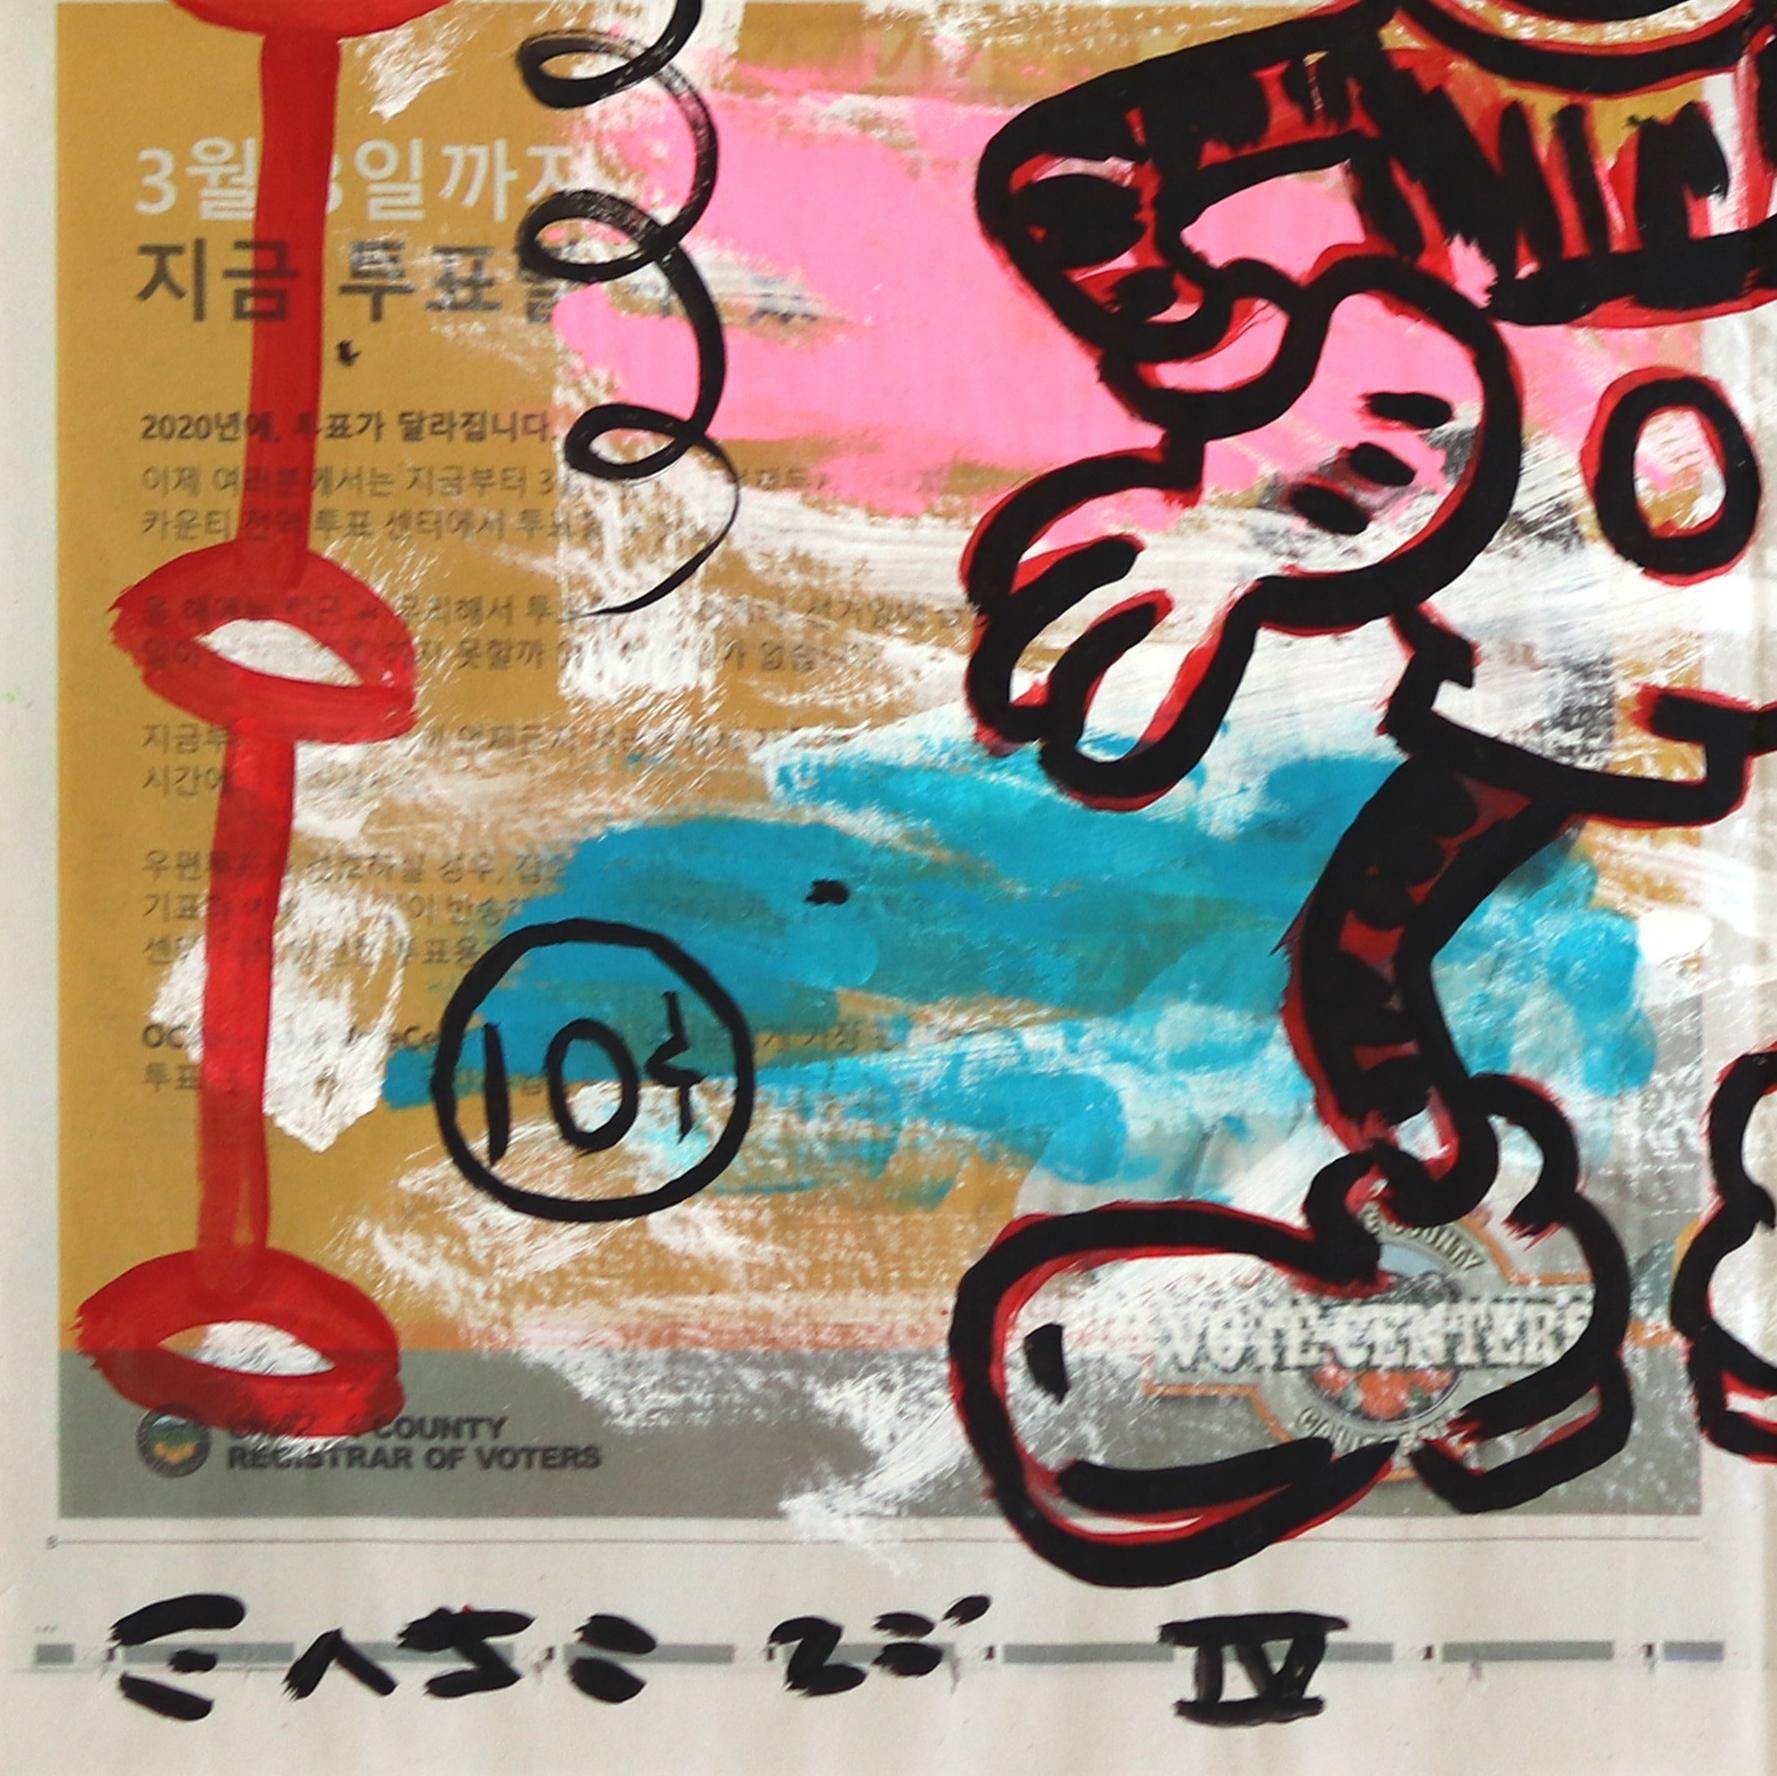 Der aus Los Angeles stammende Straßenkünstler Gary John wurde während der Kunstmesse Art Basel Miami im Jahr 2013 zum Star der internationalen Kunstszene. Johns spielerisch kühne Arbeiten erregten schnell Aufmerksamkeit und er wurde auf der NY